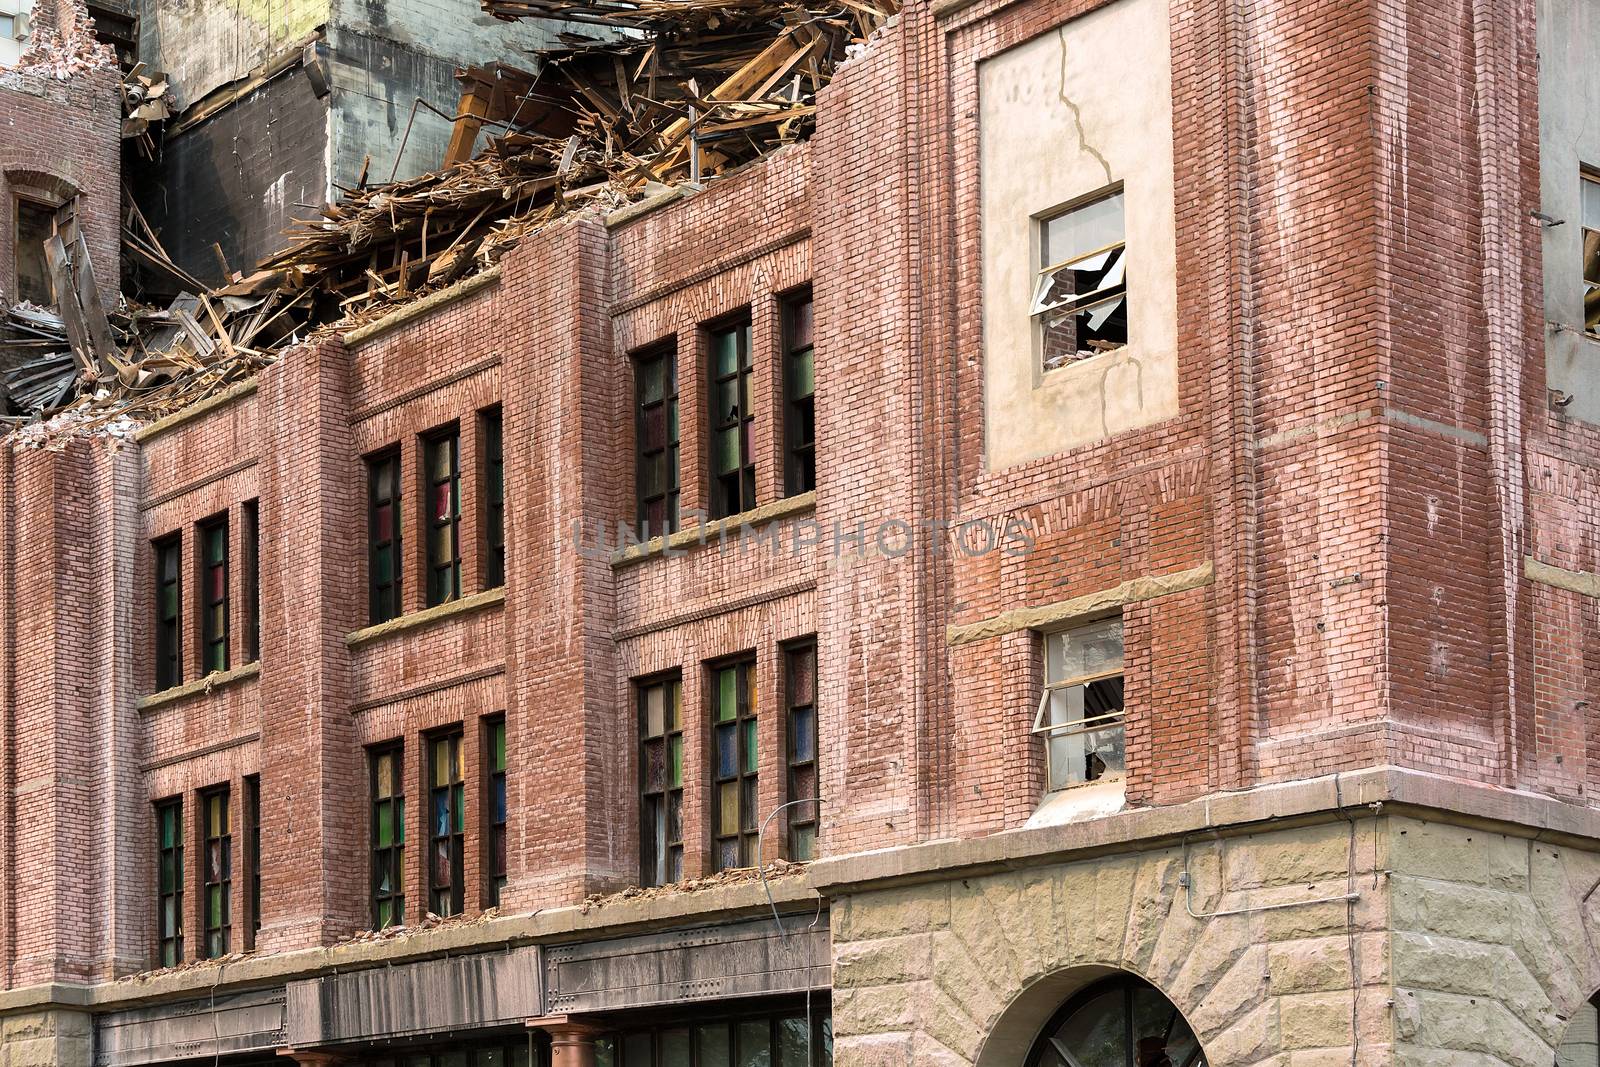 Demolition of Old Brick Building by jpldesigns